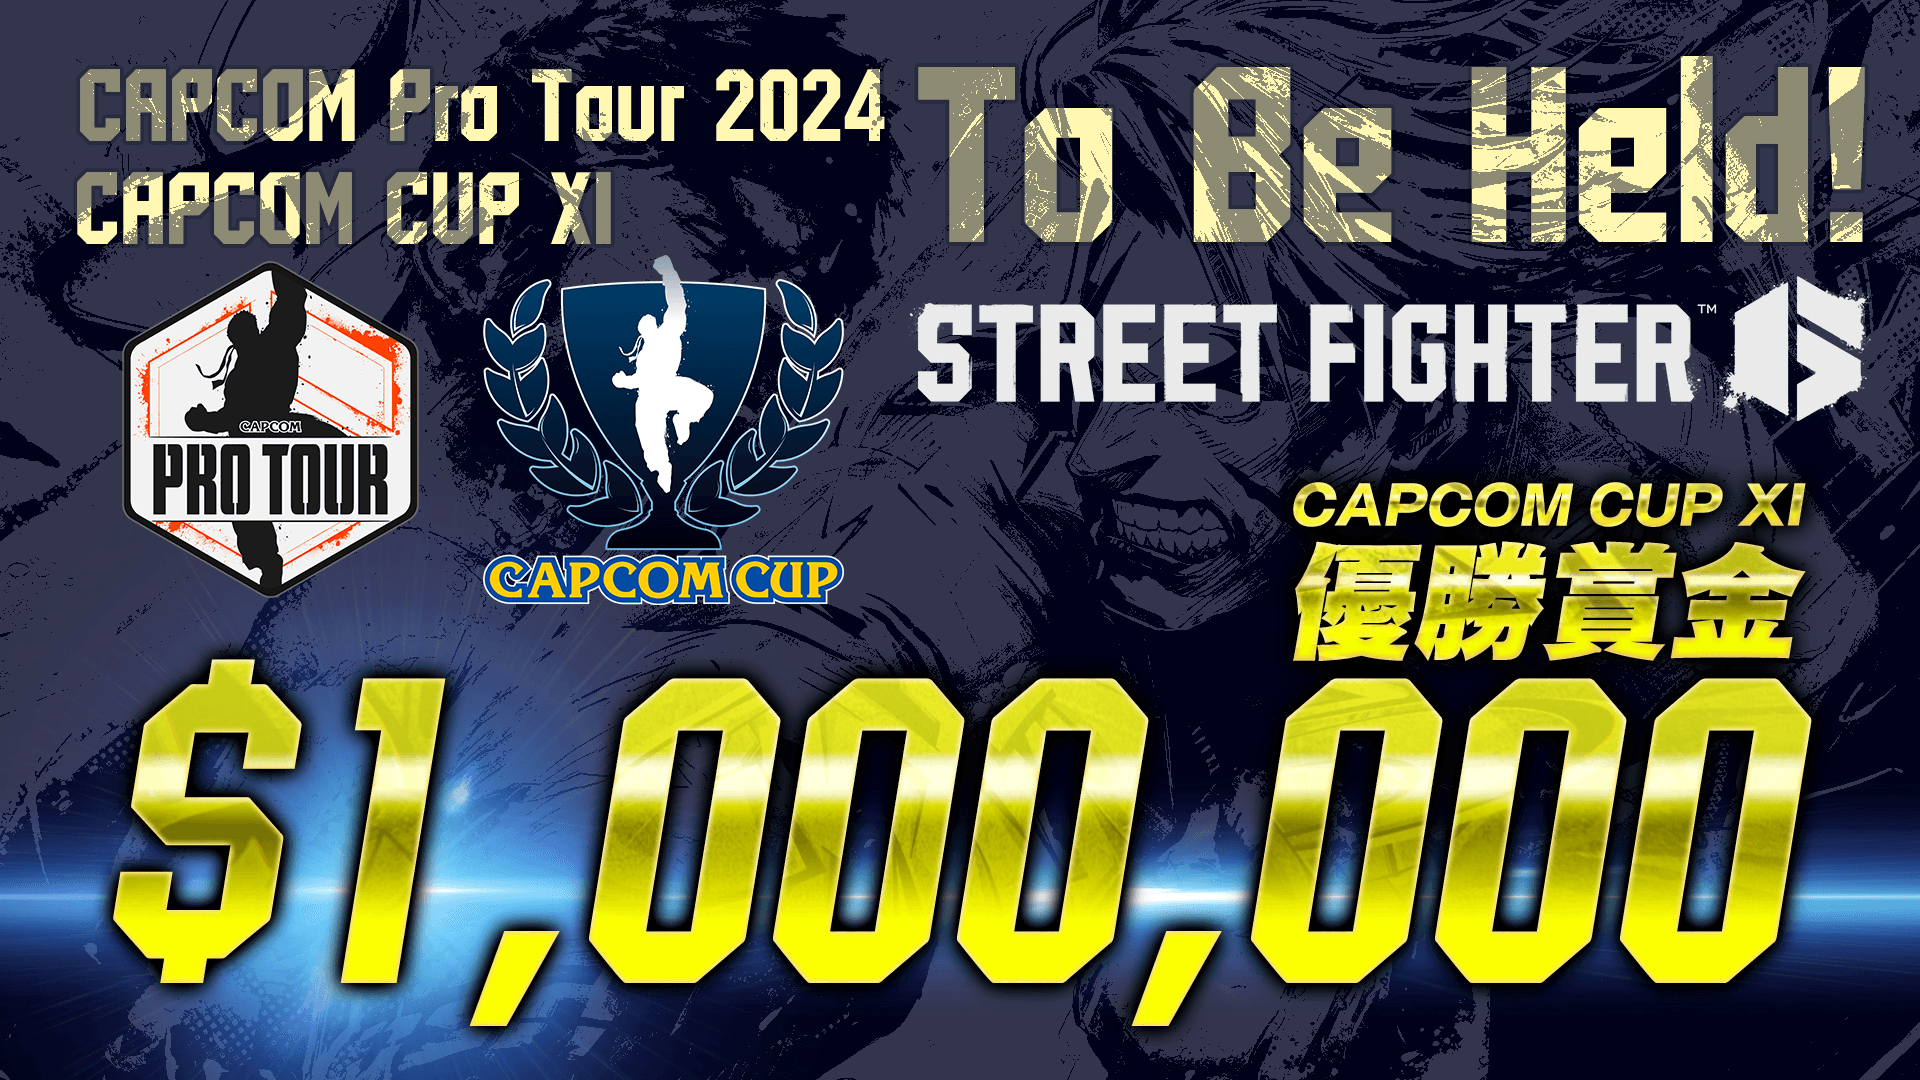 Capcom Pro Tour 2024 feature image